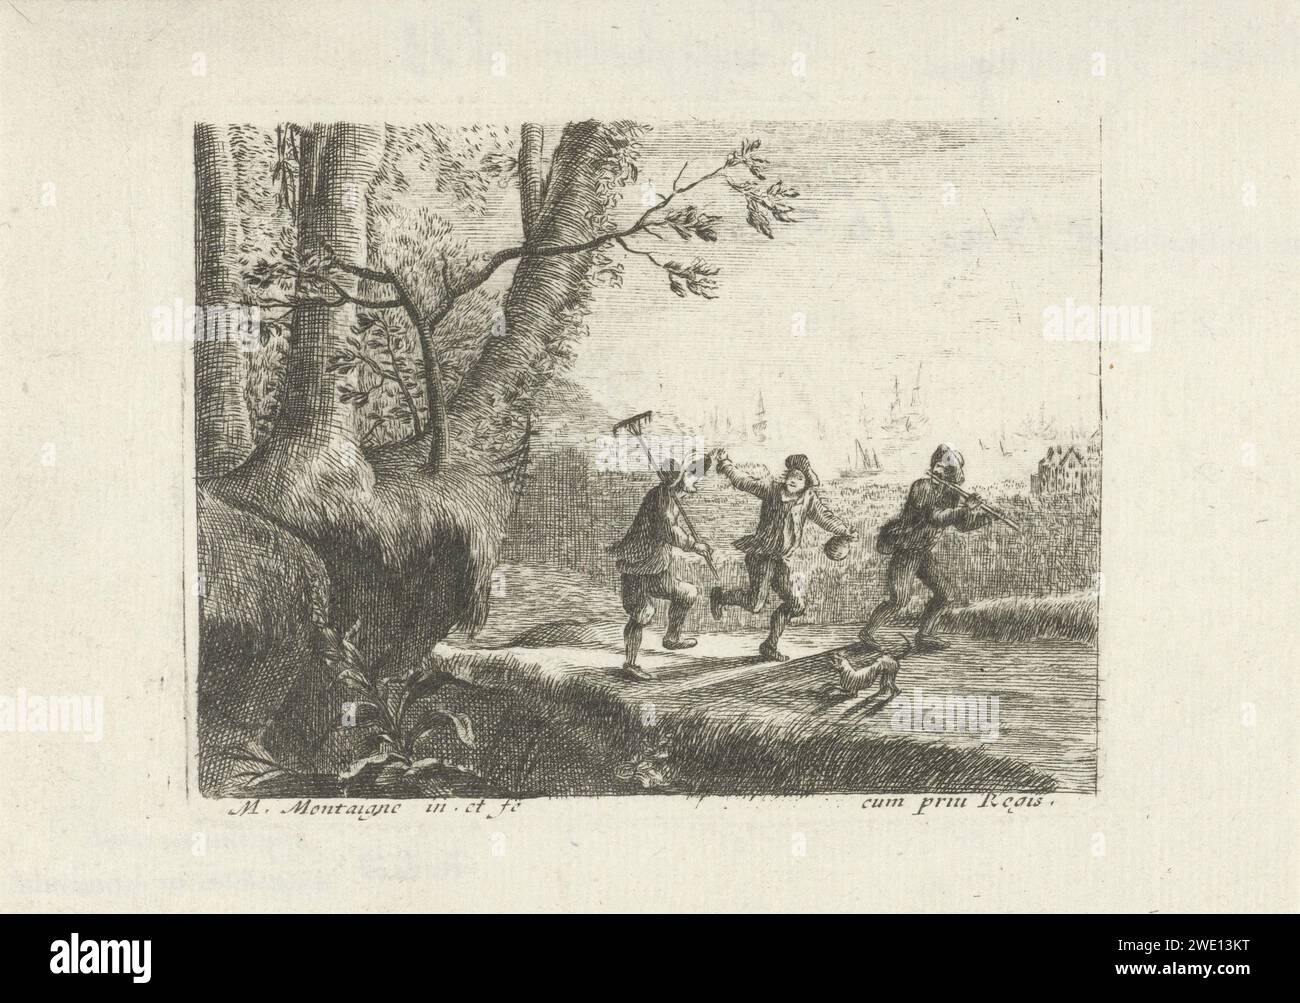 Landschaft mit drei tanzenden Bauern, Matthieu van Plattenberg, 1617 - 1660 Druck auf einem Pfad entlang der Küste, drei Bauern tanzen, einer von ihnen pfeift. Ein Hund für sie. Pariser Papierstich-Bauern. Tanzen. Küste Stockfoto